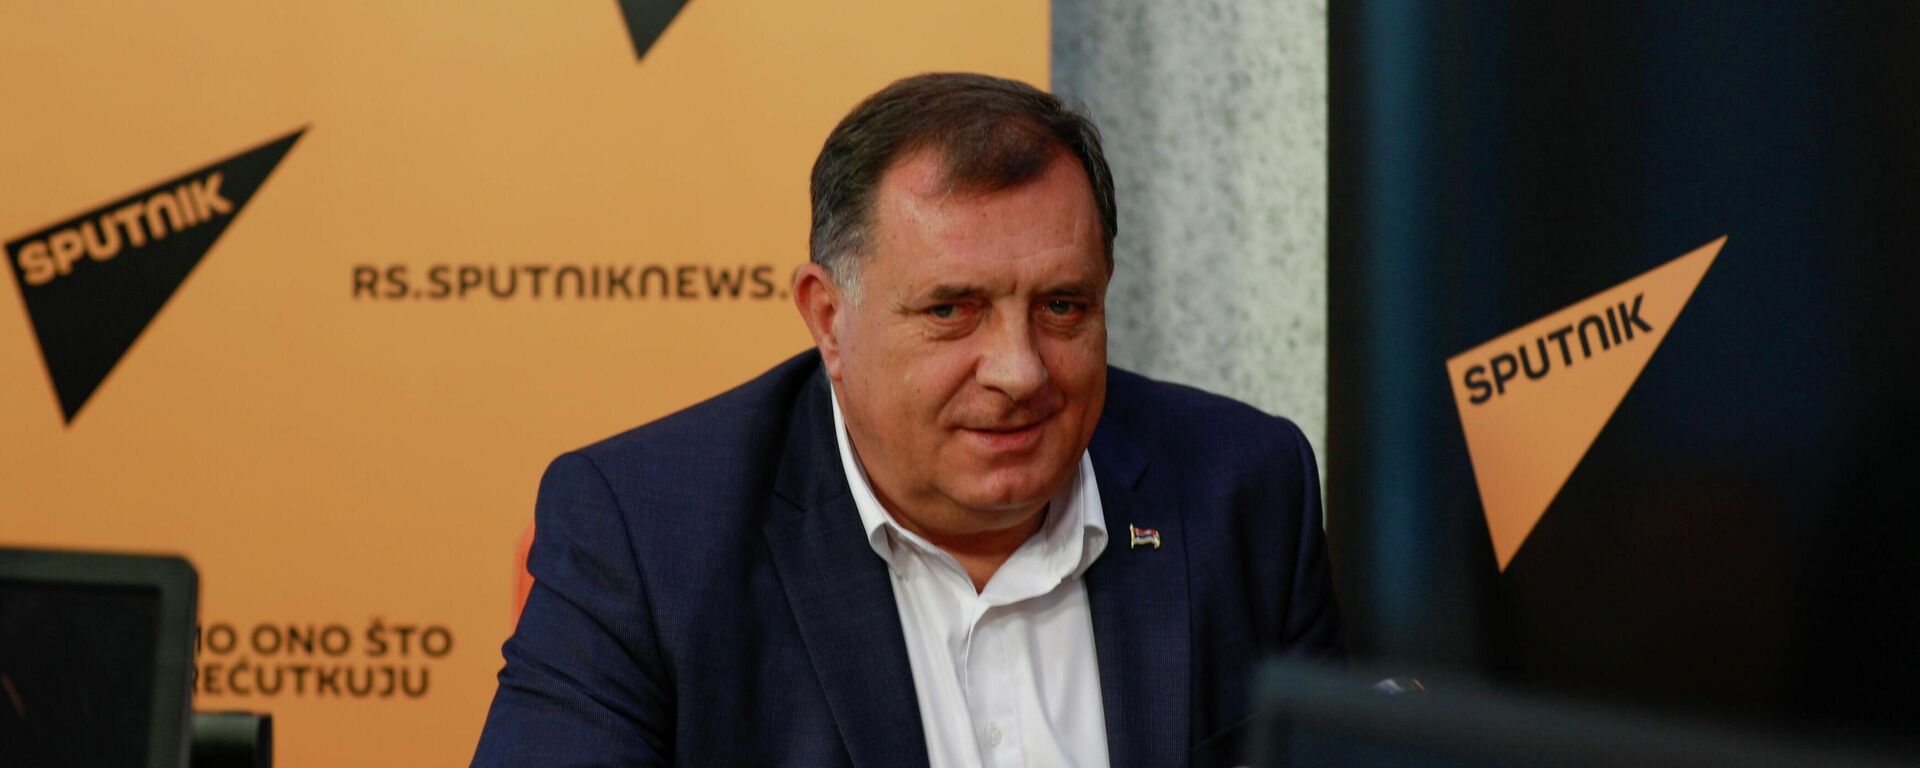 Milorad Dodik, gost emisije Od četvrtka do četvrtka, 12.08.2021. - Sputnik Srbija, 1920, 12.08.2021